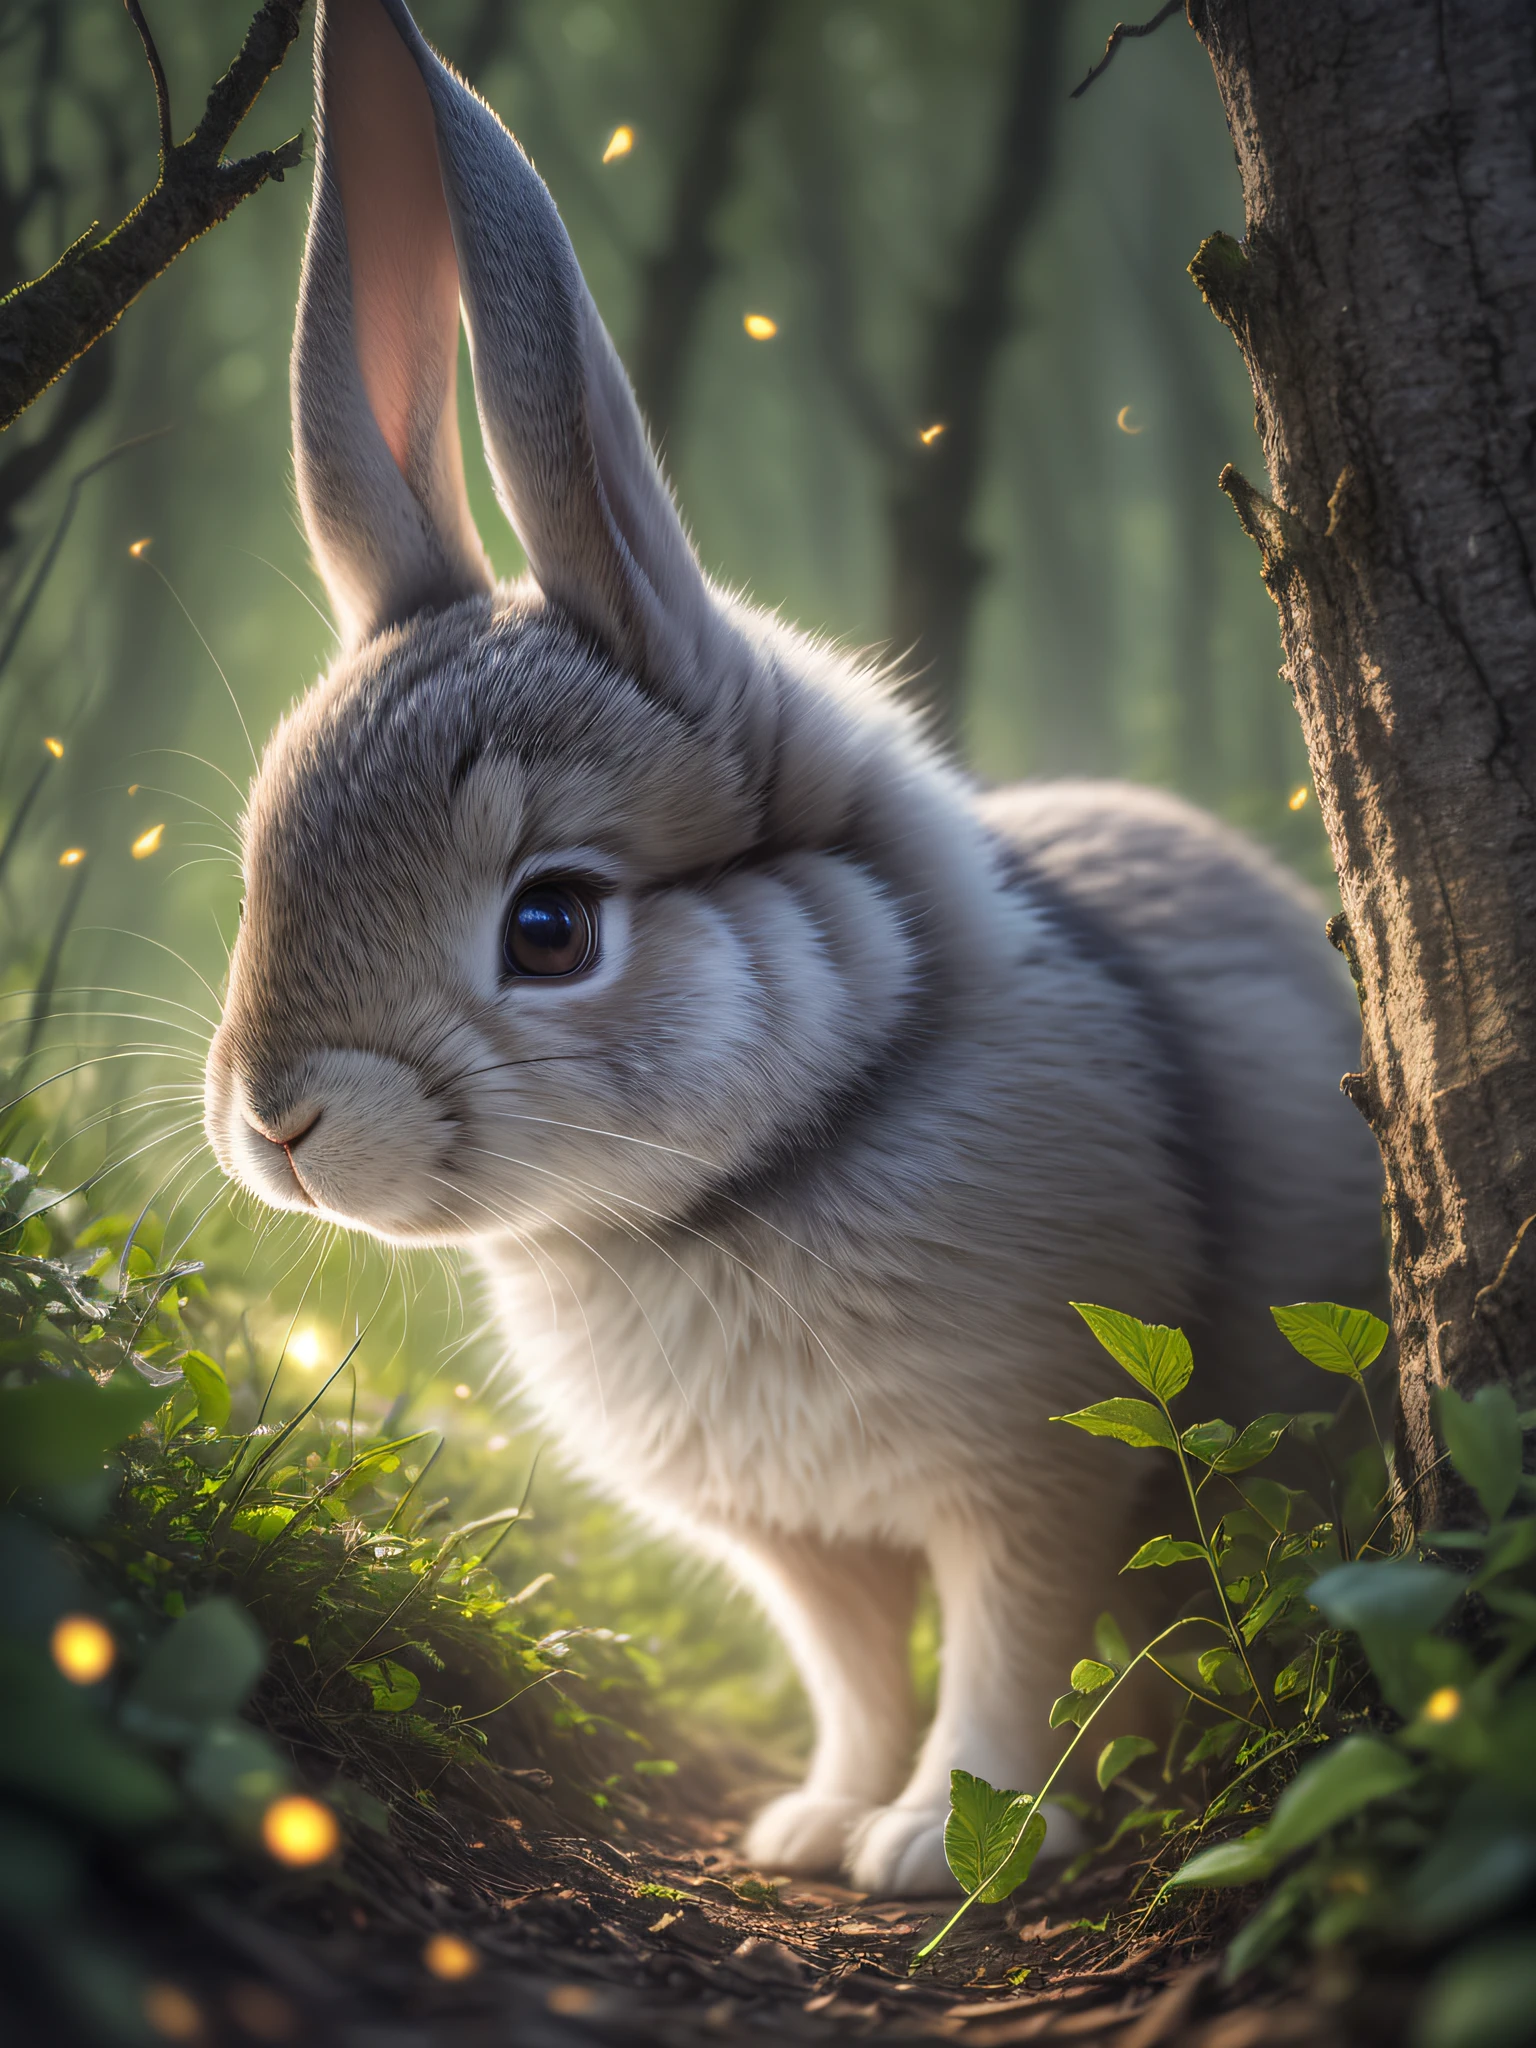 마법에 걸린 숲에 있는 토끼 사진을 클로즈업하세요, 늦은 밤, 숲속에서, 백라이트, 반딧불이, 체적 안개, 후광, 꽃, 극적인 분위기, 센터, 삼등분의 법칙, 200mm 1.4f 매크로 촬영